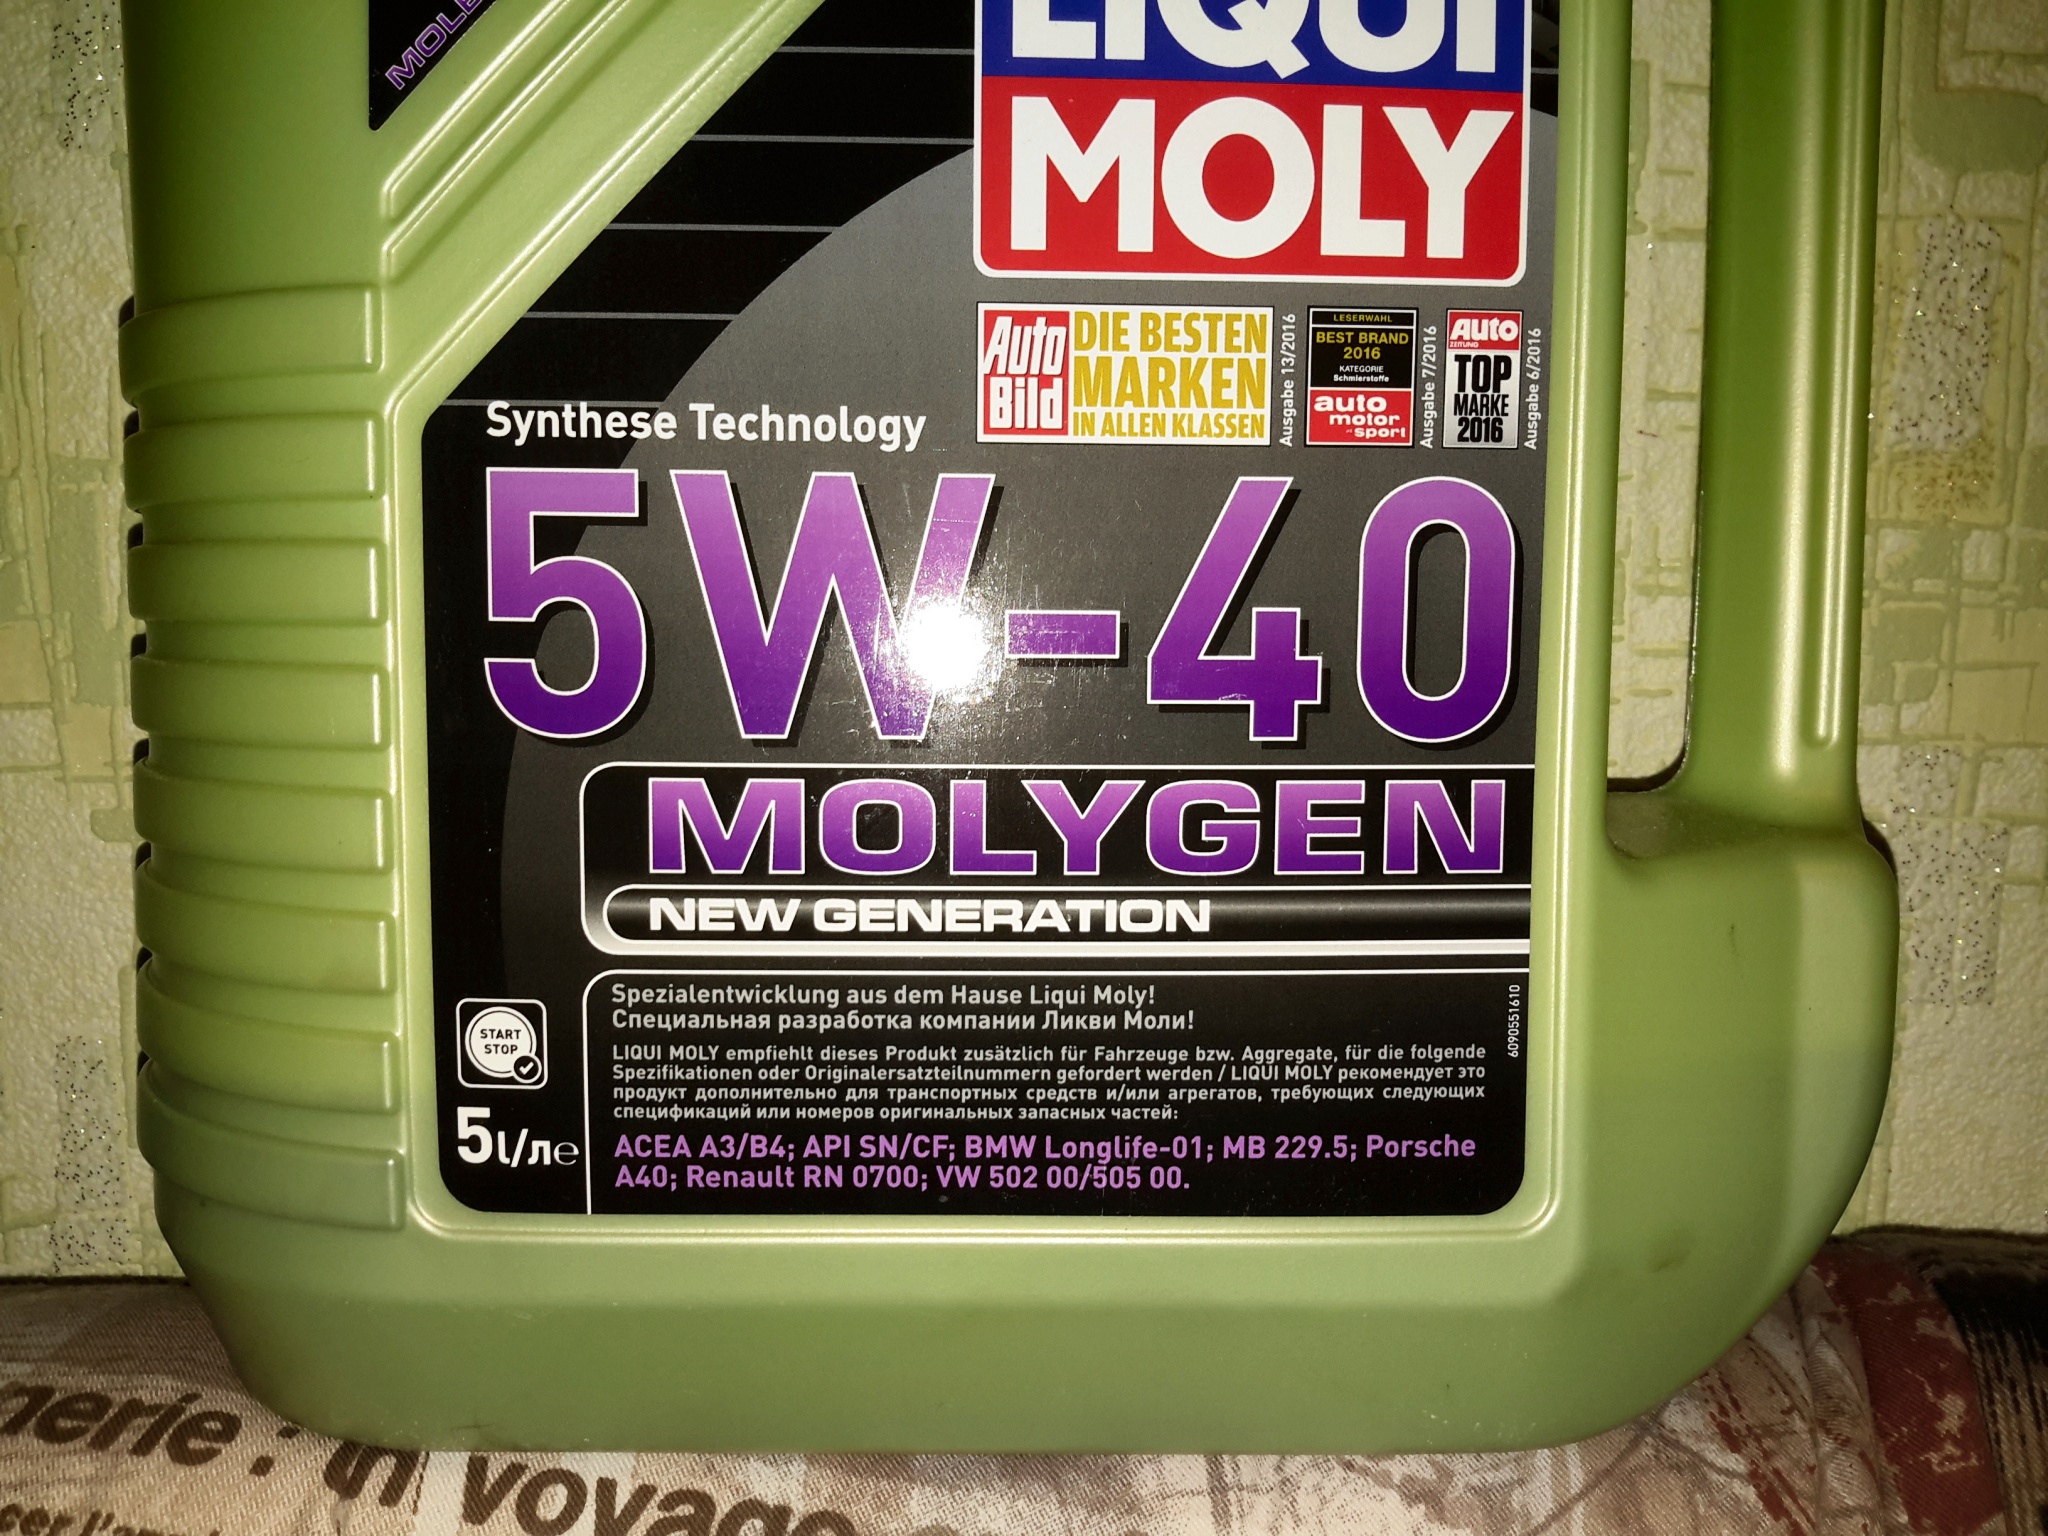 Купить масло ликви моли молиген. Ликви моли молиген. Molygen 5w-40. Liqui Moly Molygen New Generation 5w-40 цвет. Liqui Moly масло моторное Molygen New Generation.